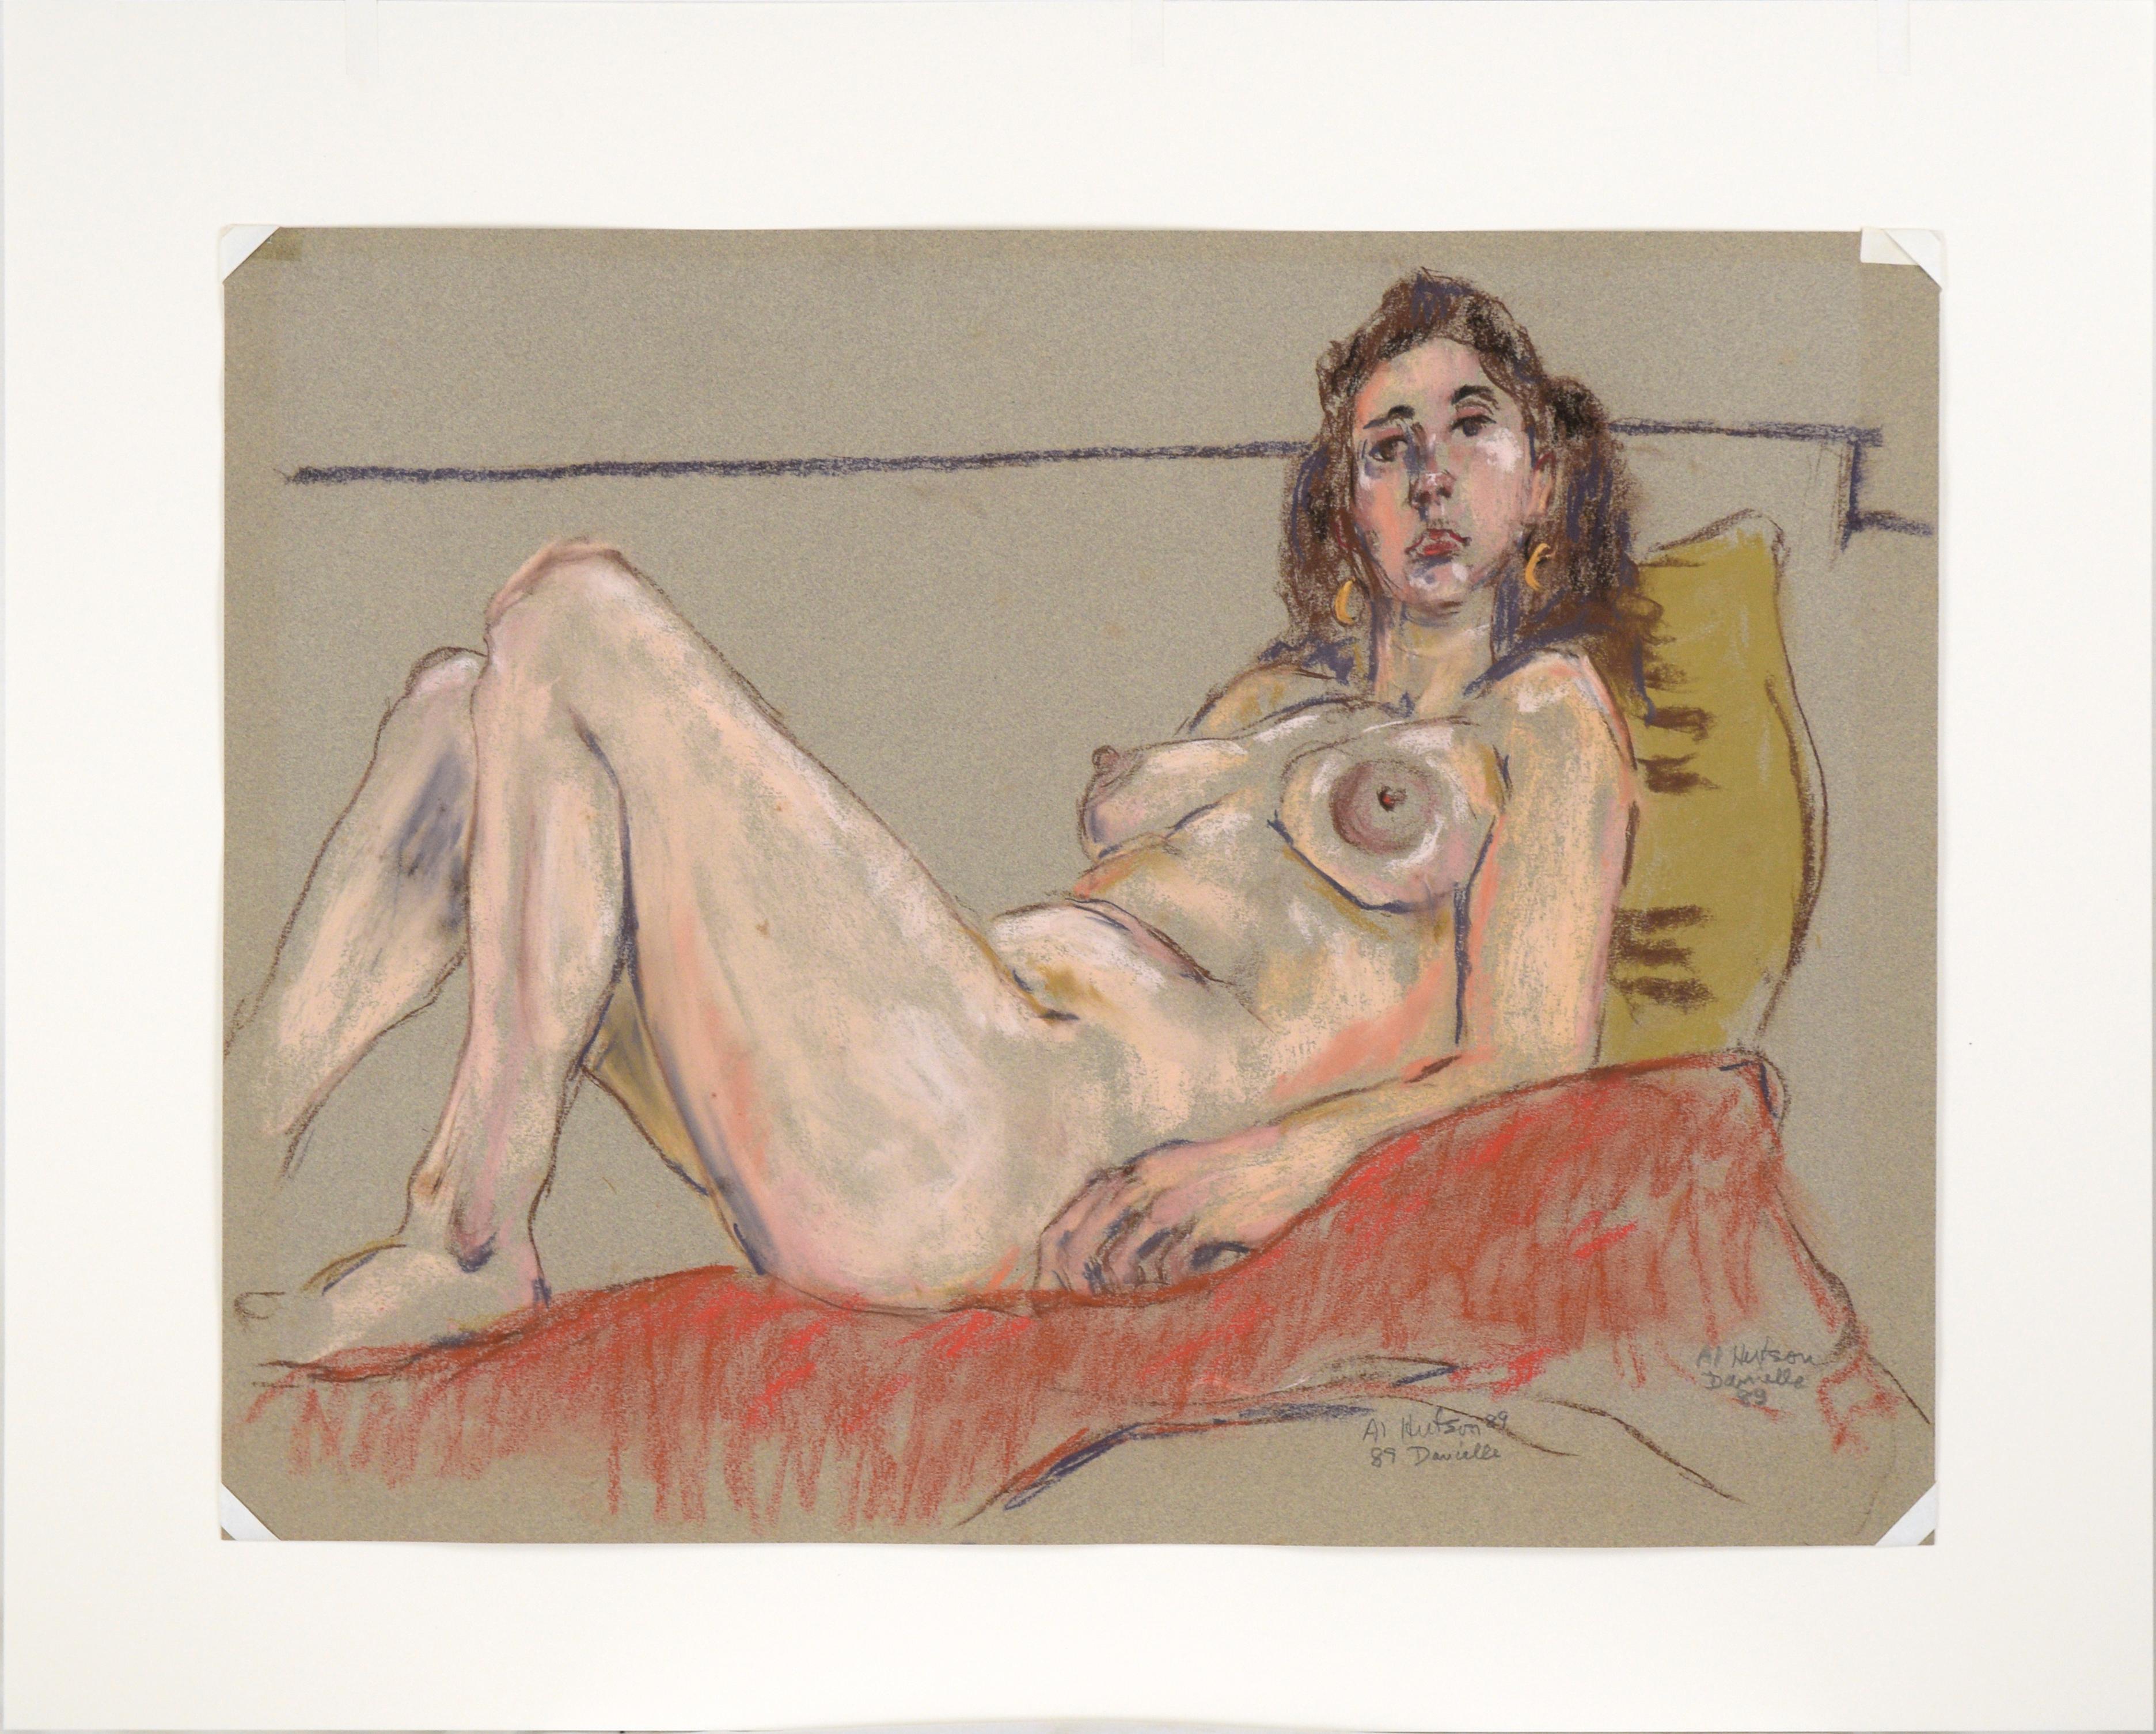 Kräftige Pastellzeichnung von Albert Hutson (Amerikaner, 1923-1994). Eine Frau liegt auf einer weichen roten Unterlage und stützt sich auf ein gelbes Kissen. Das Modell ist gekonnt skizziert, mit schnellen, aber sicheren Strichen. Hutson hat den